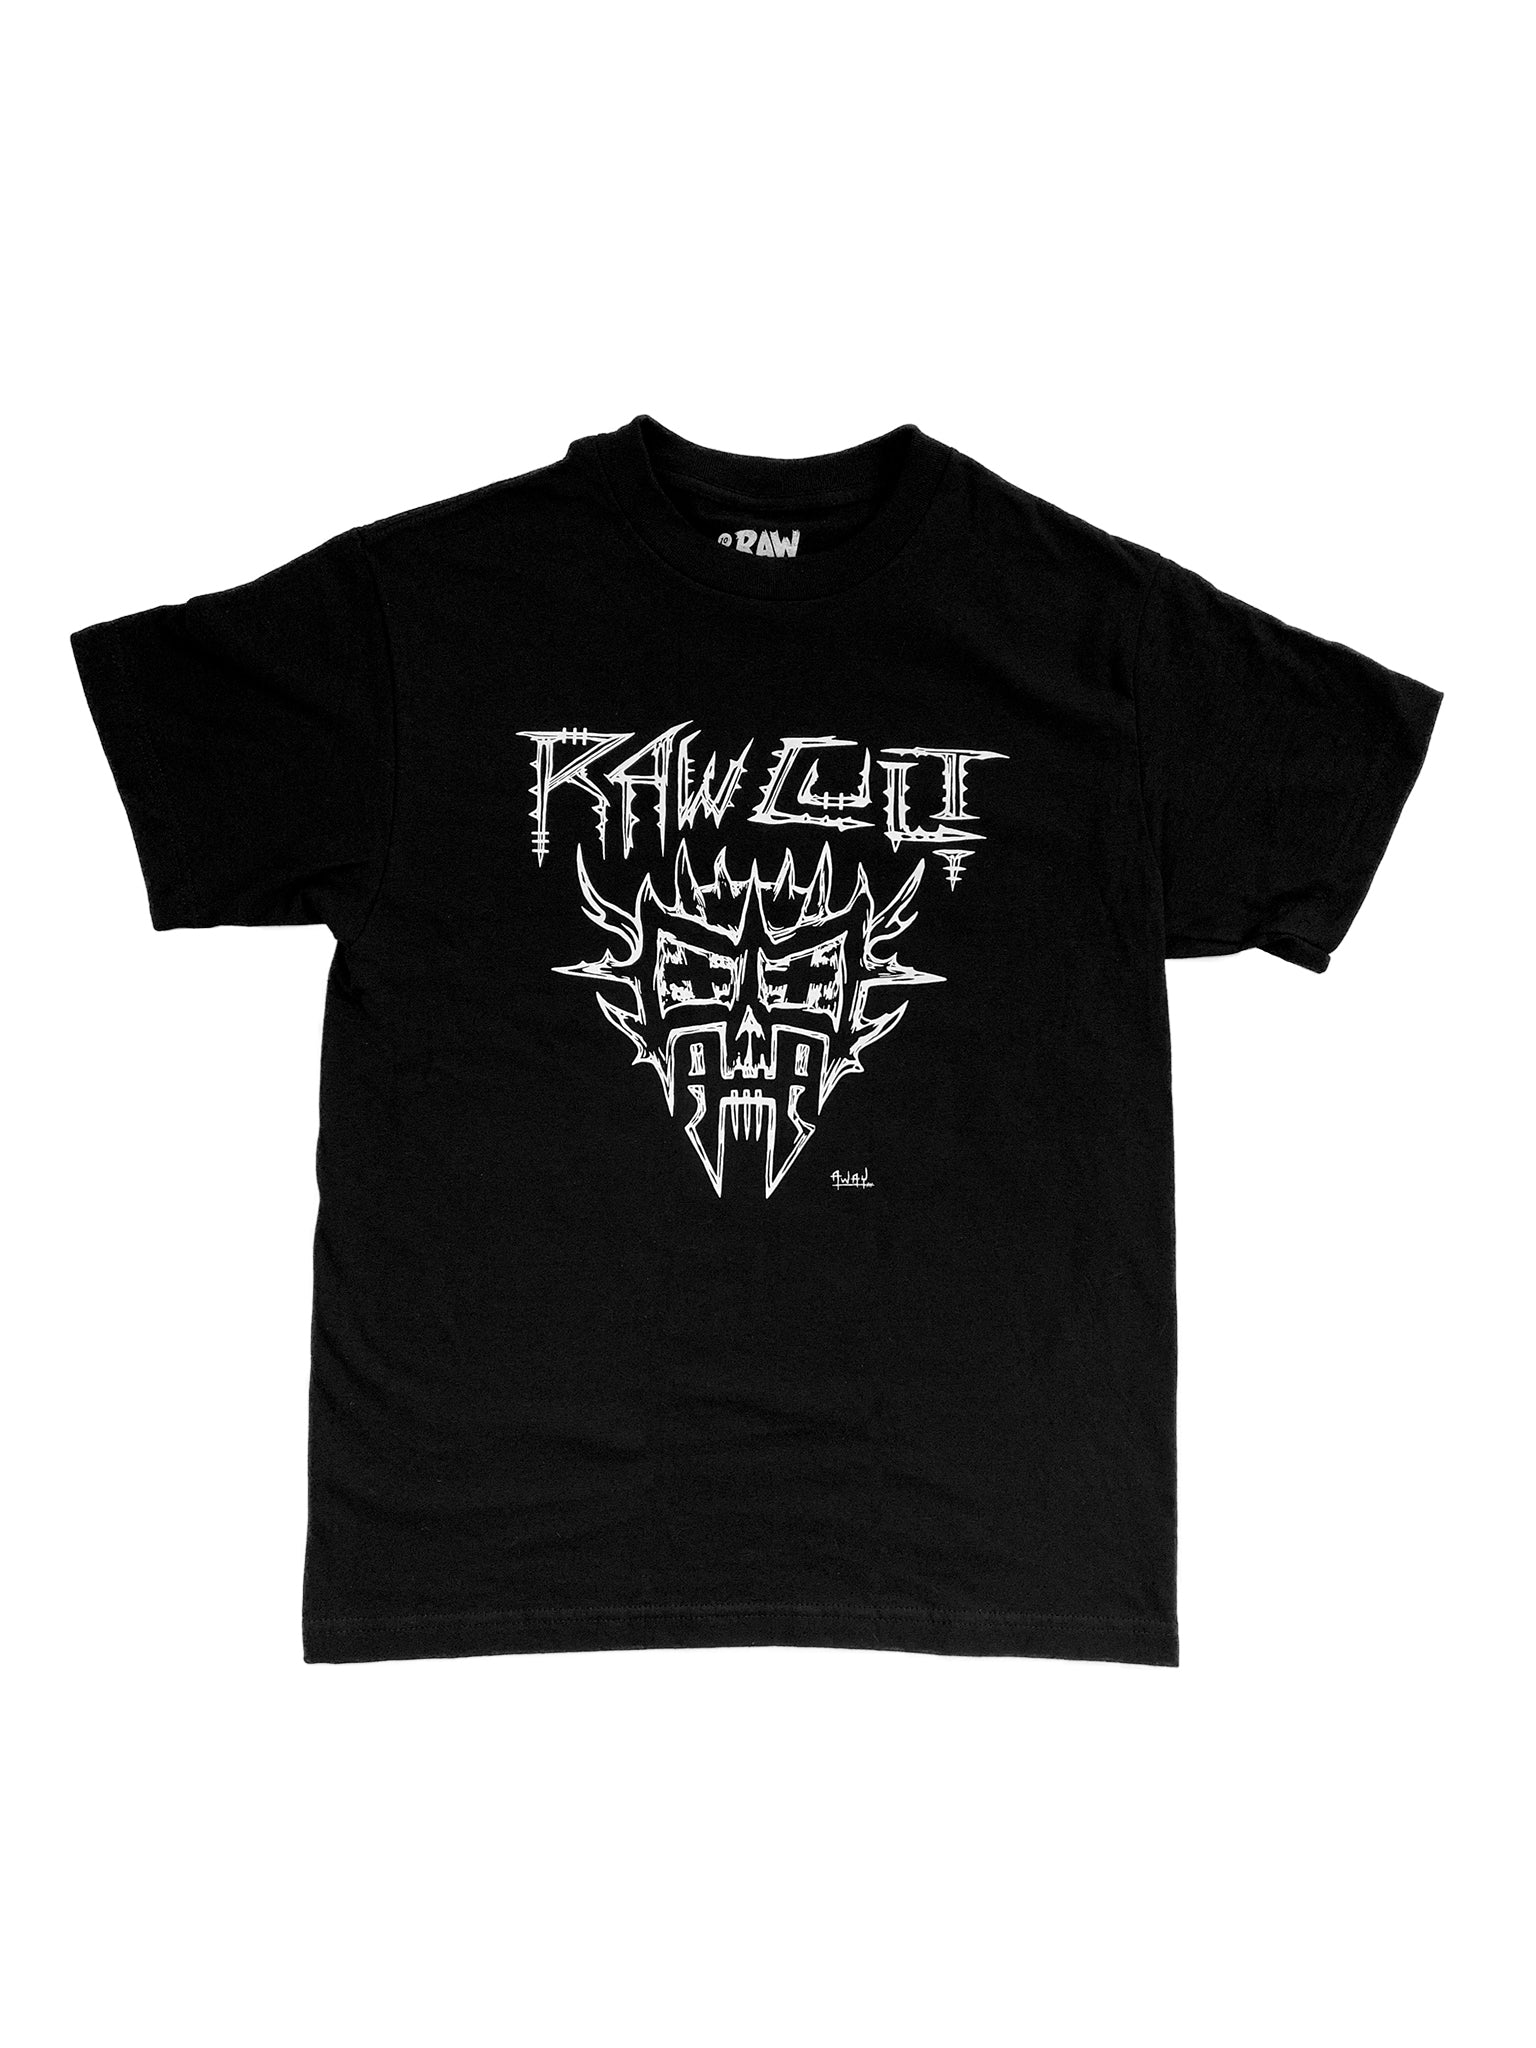 RAW CULT | RAW CULTerrestrial T-Shirt (Black) | Artwork by Away